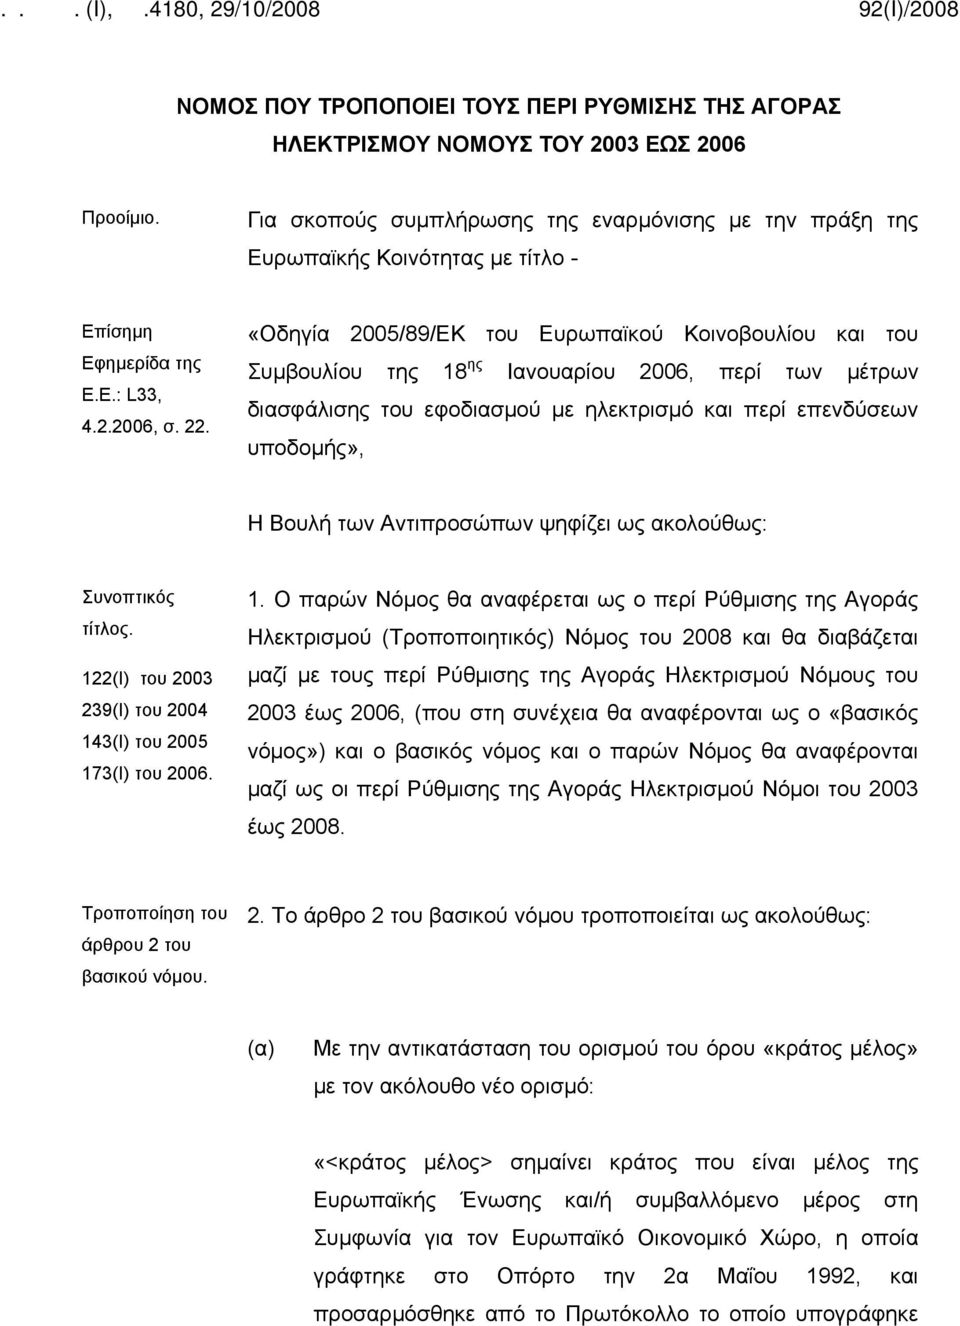 «Οδηγία 2005/89/ΕΚ του Ευρωπαϊκού Κοινοβουλίου και του Συμβουλίου της 18 ης Ιανουαρίου 2006, περί των μέτρων διασφάλισης του εφοδιασμού με ηλεκτρισμό και περί επενδύσεων υποδομής», Η Βουλή των